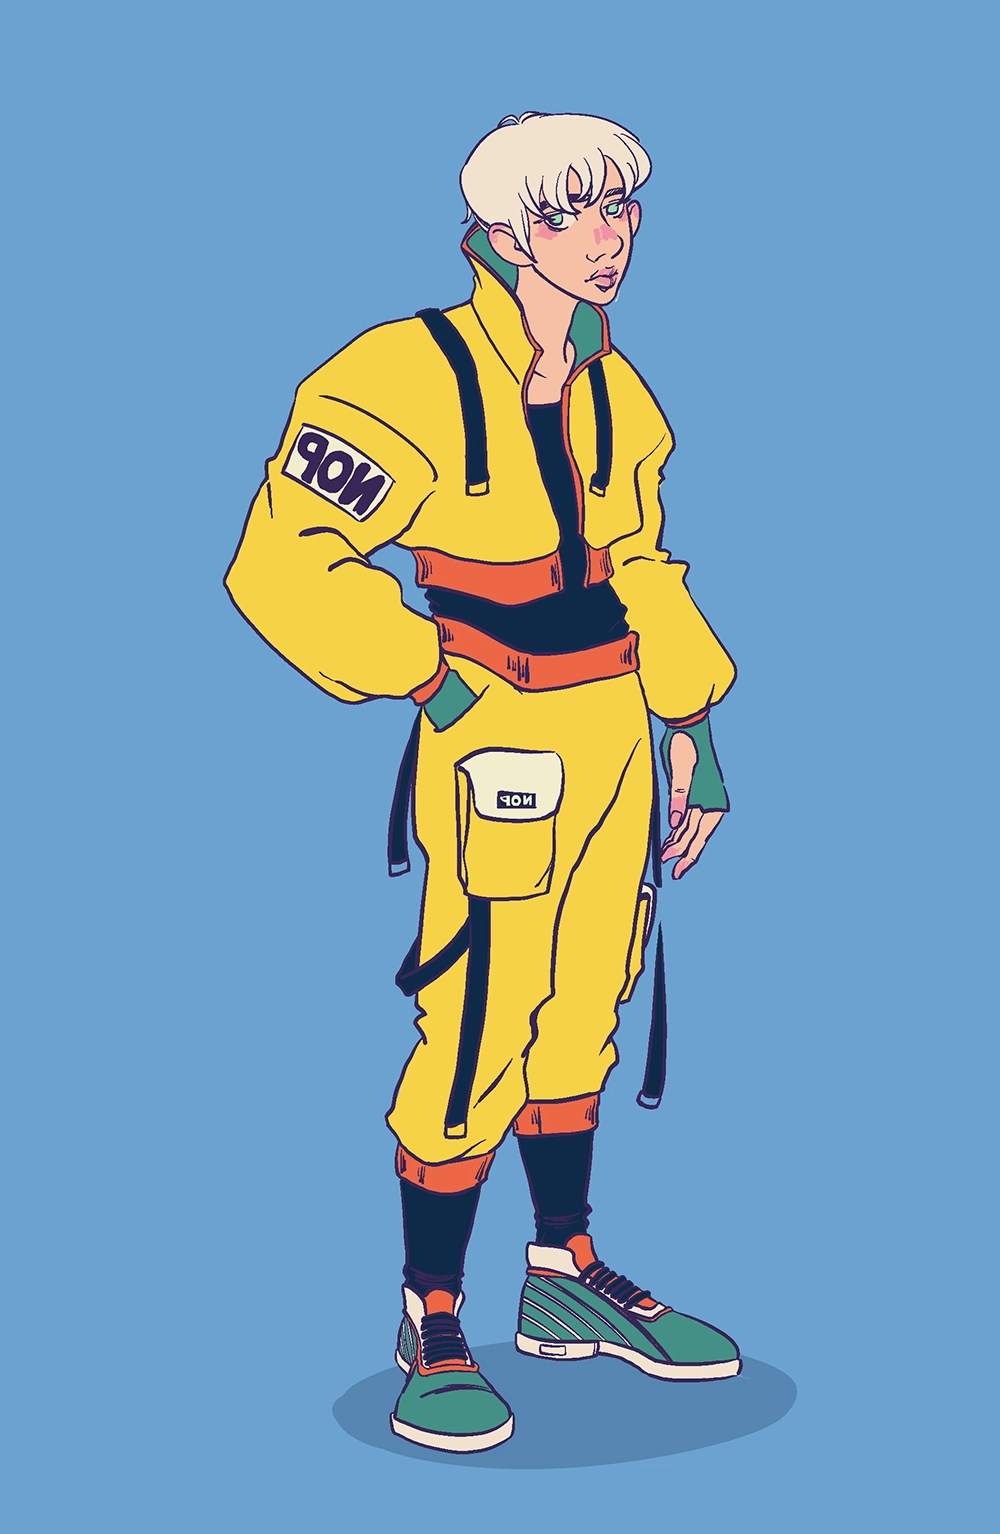 Character design - Techwear Jaune - Illustration d'AméAmé.art, soit Amélie BAILLY : chara design, d'un jeune homme habillé d'une tenue techwear jaune sur fond bleu